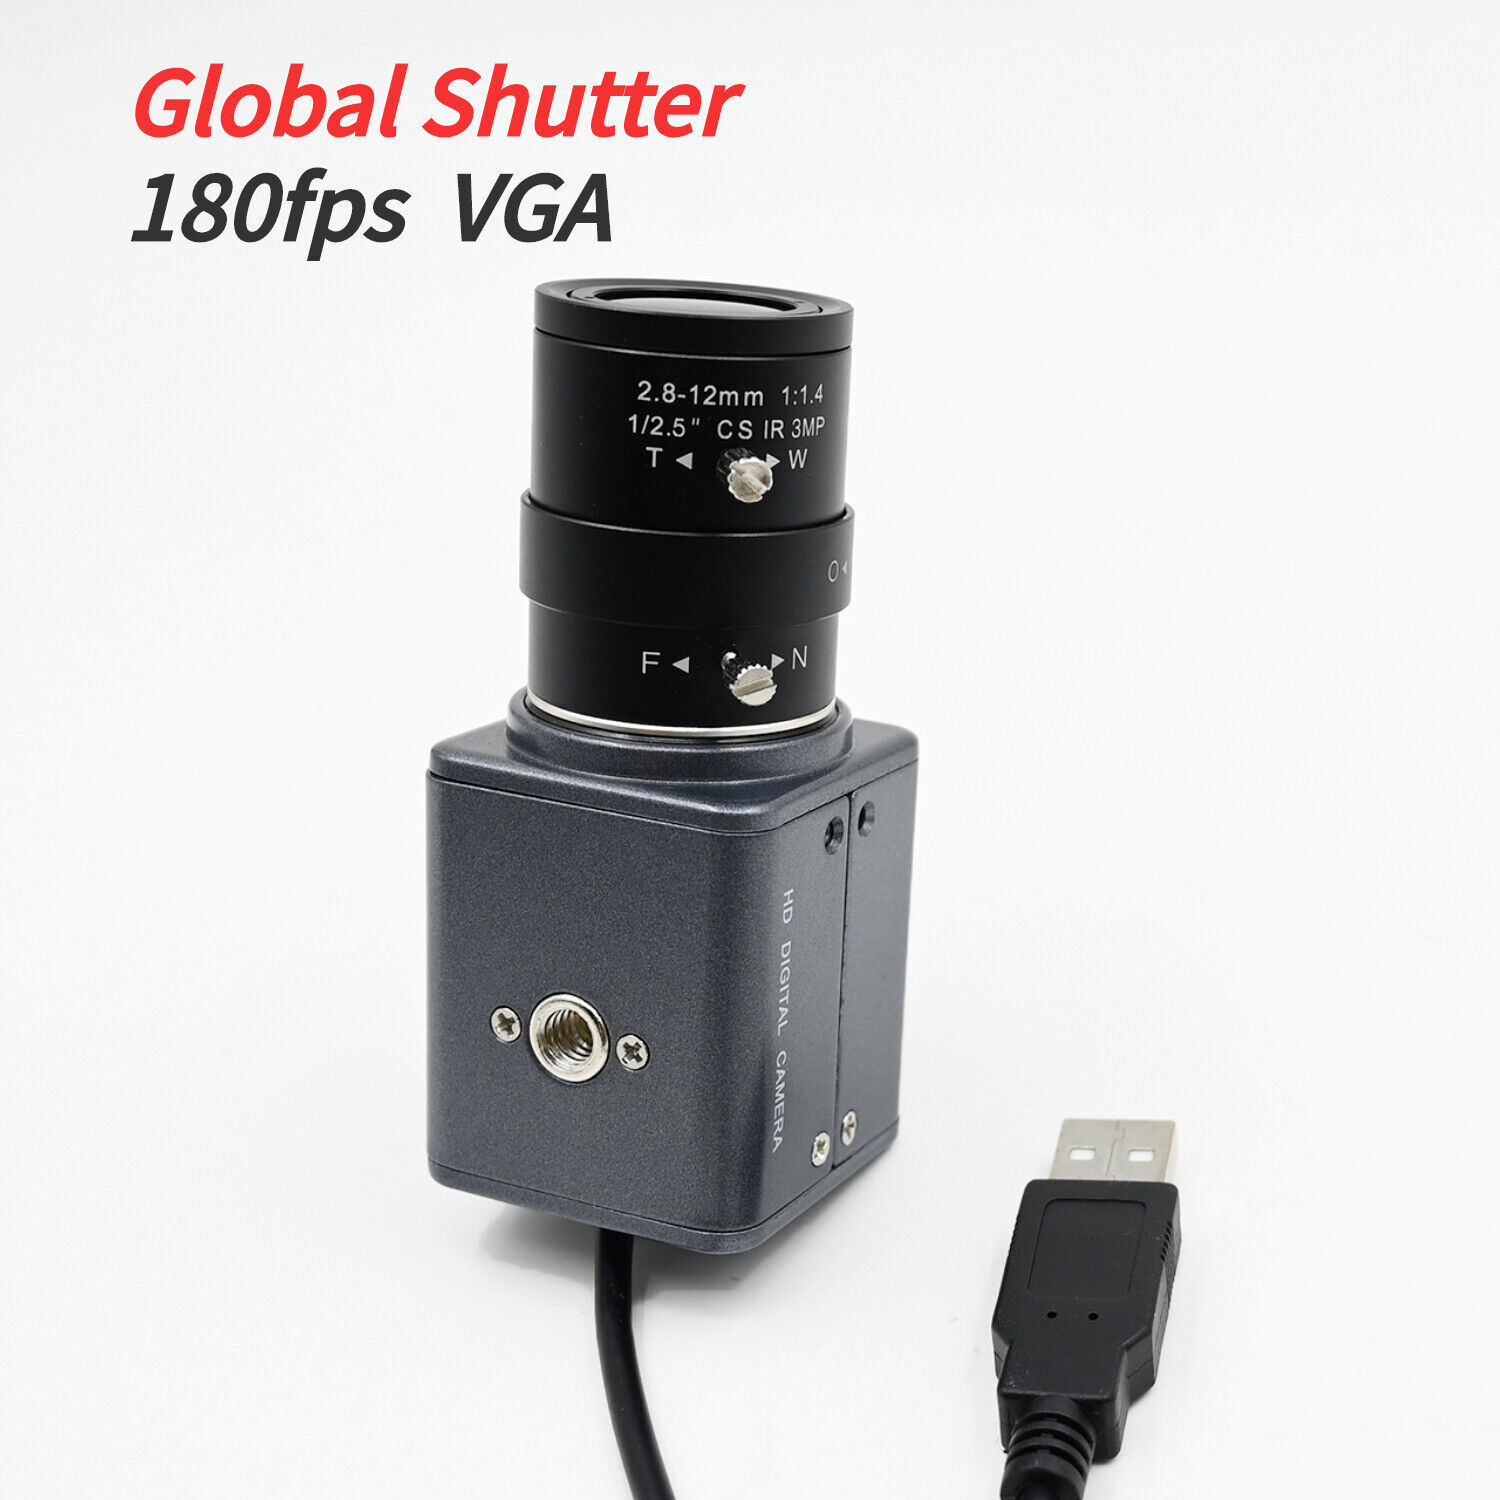 Global Shutter Webcam 180fps VGA USB Camera For High Frame Rate Image Capture